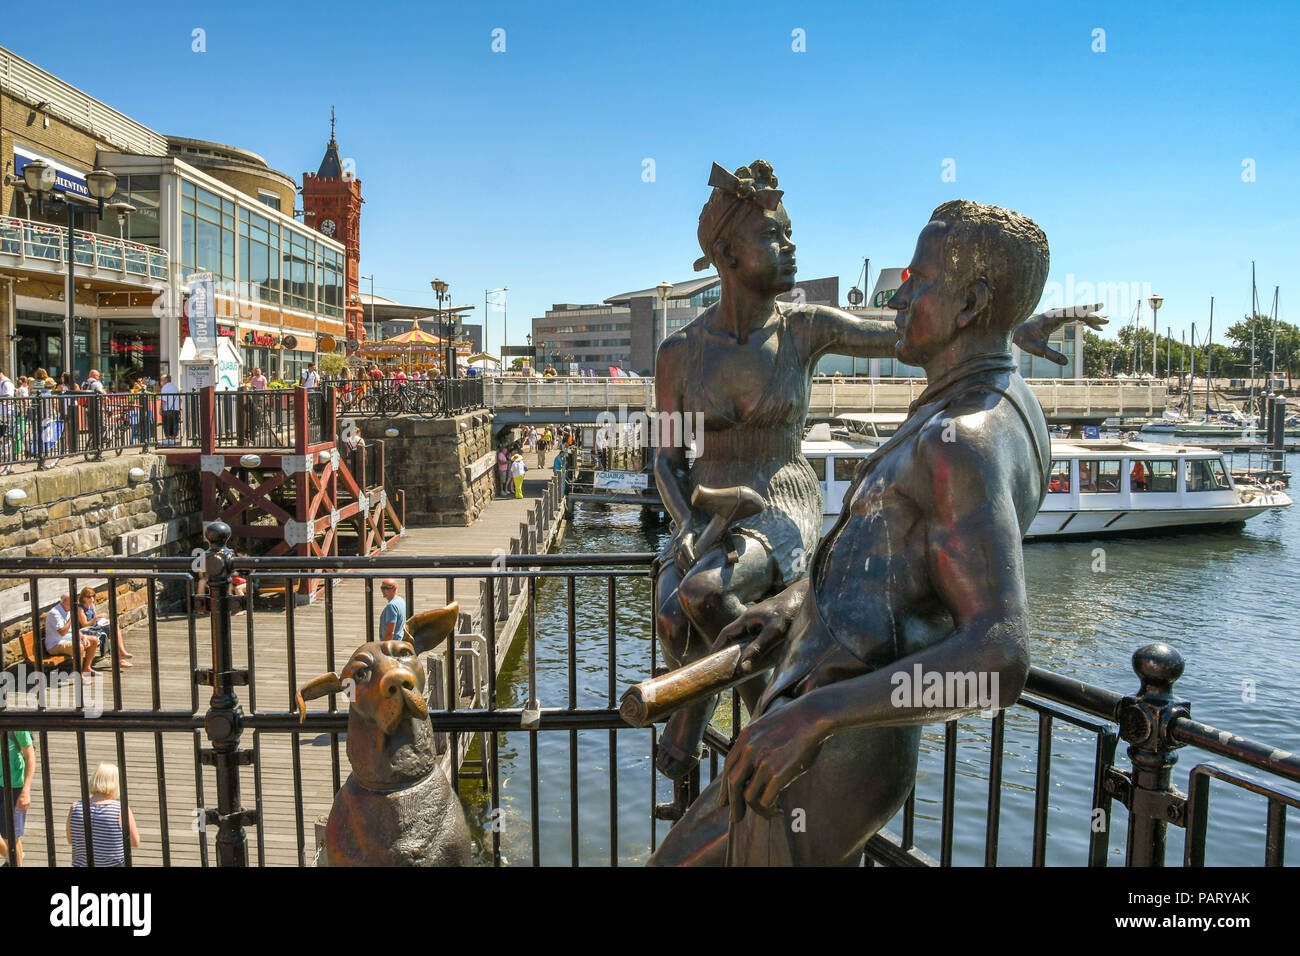 La sculpture en bronze "des gens comme nous" sur Mermaid Quay dans la baie de Cardiff. Un exemple d'art public, il est composé de deux jeunes gens et un chien. Banque D'Images